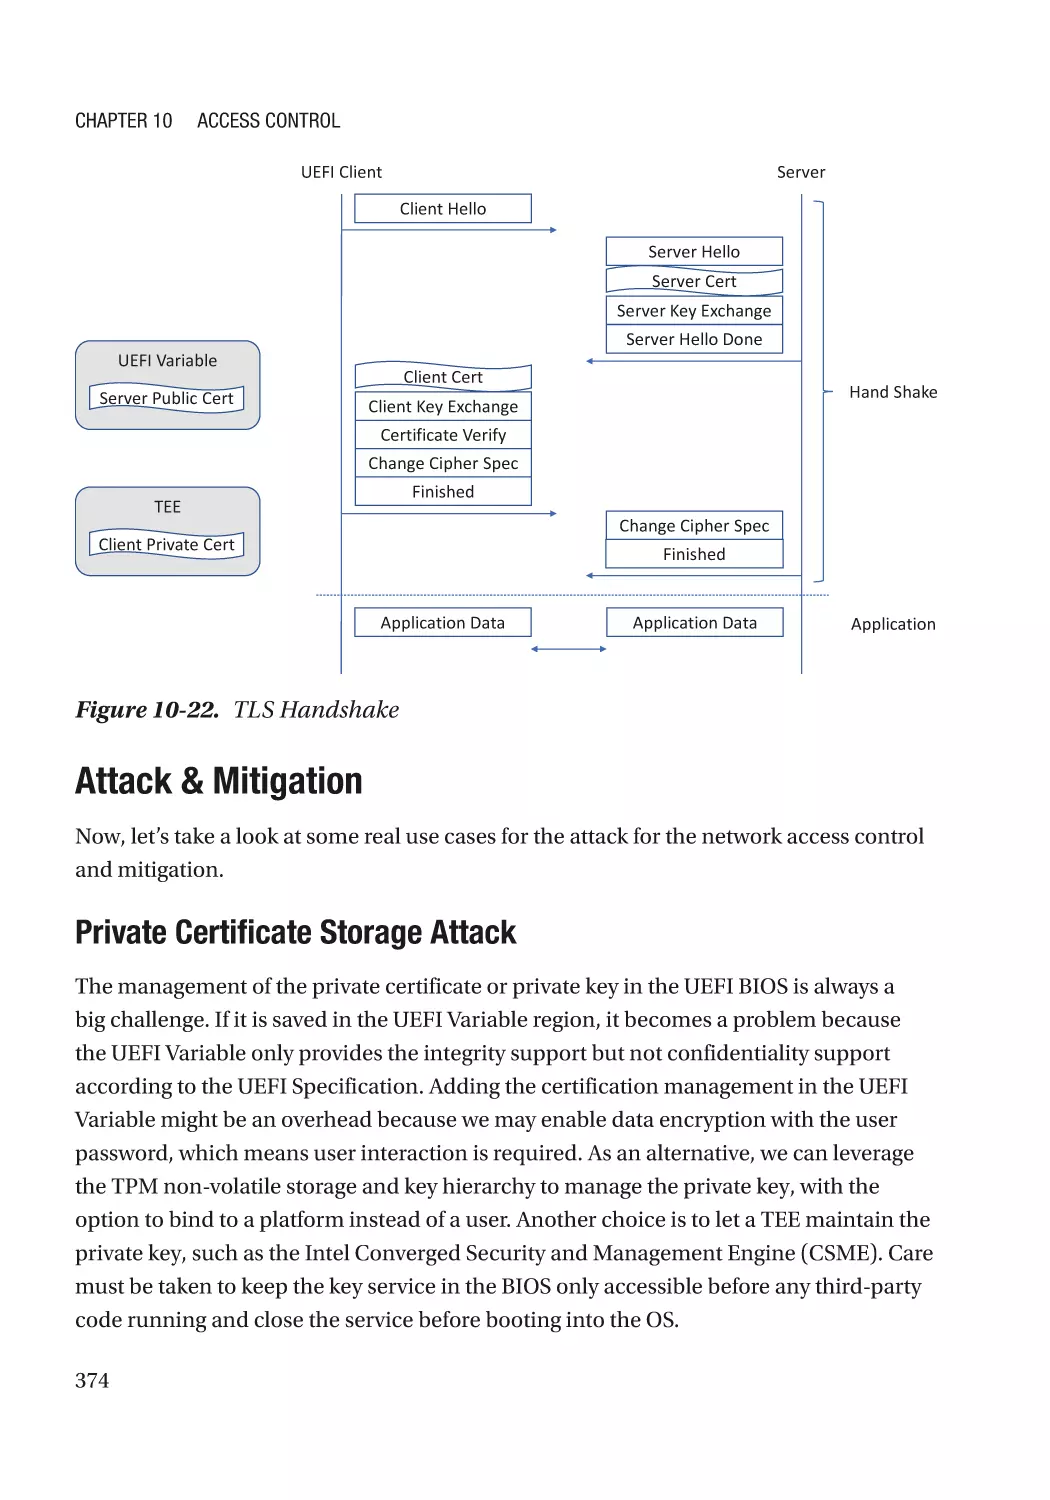 Attack & Mitigation
Private Certificate Storage Attack